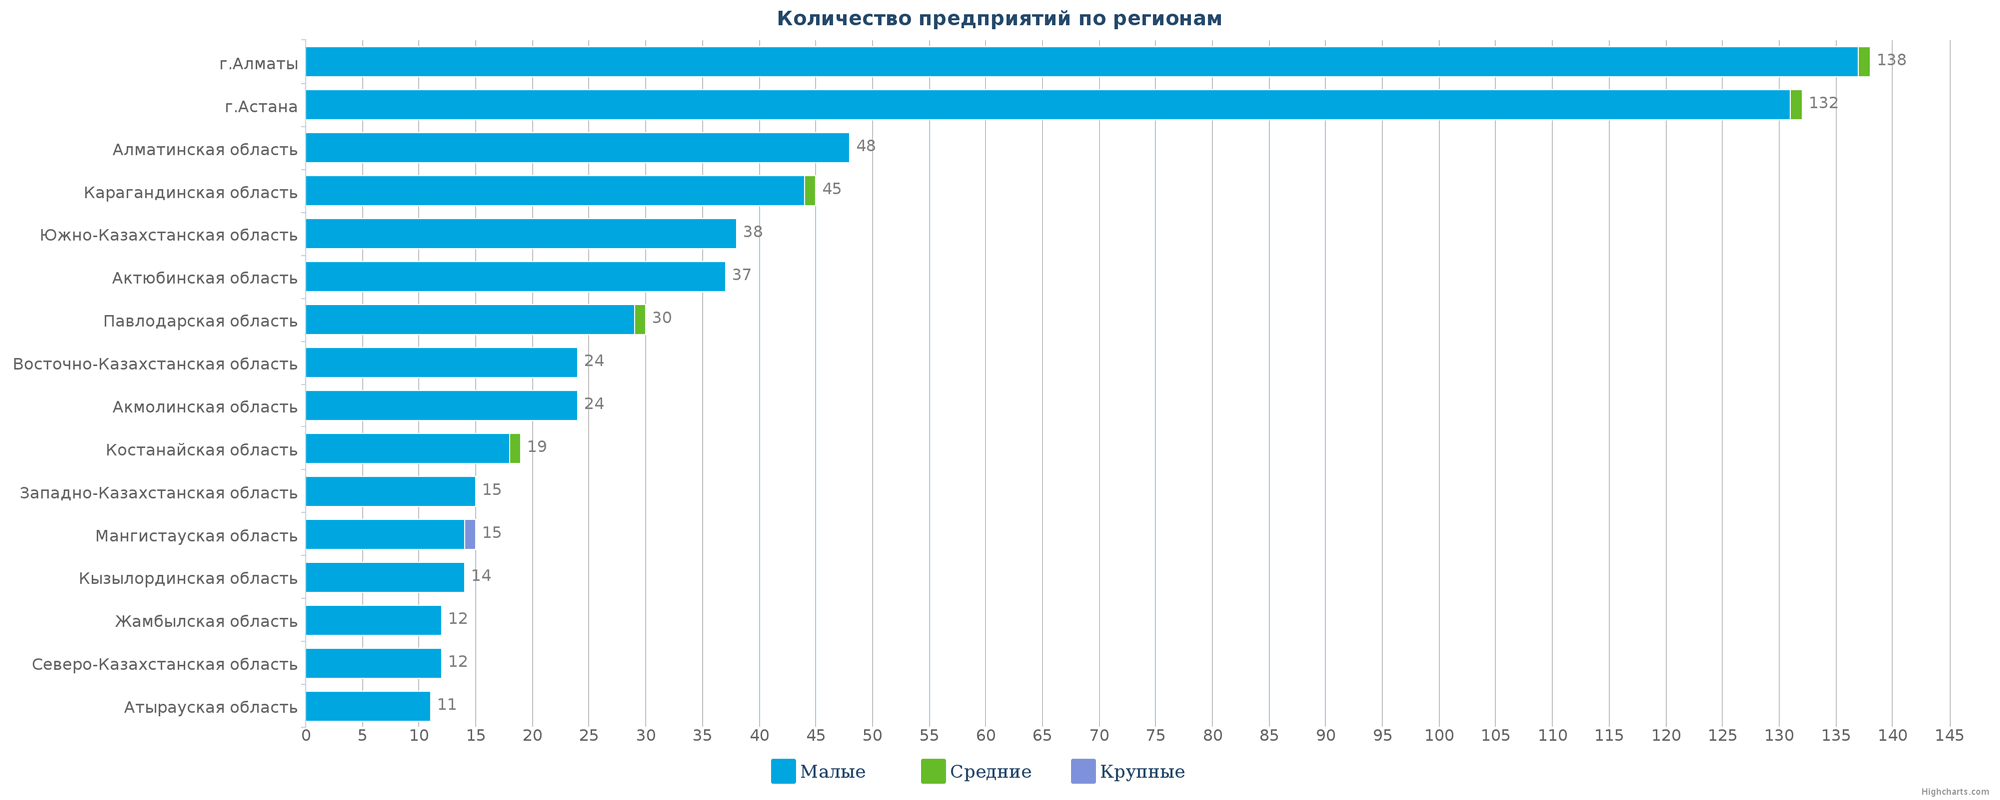 Количество новых юридических лиц в справочнике по регионам РК